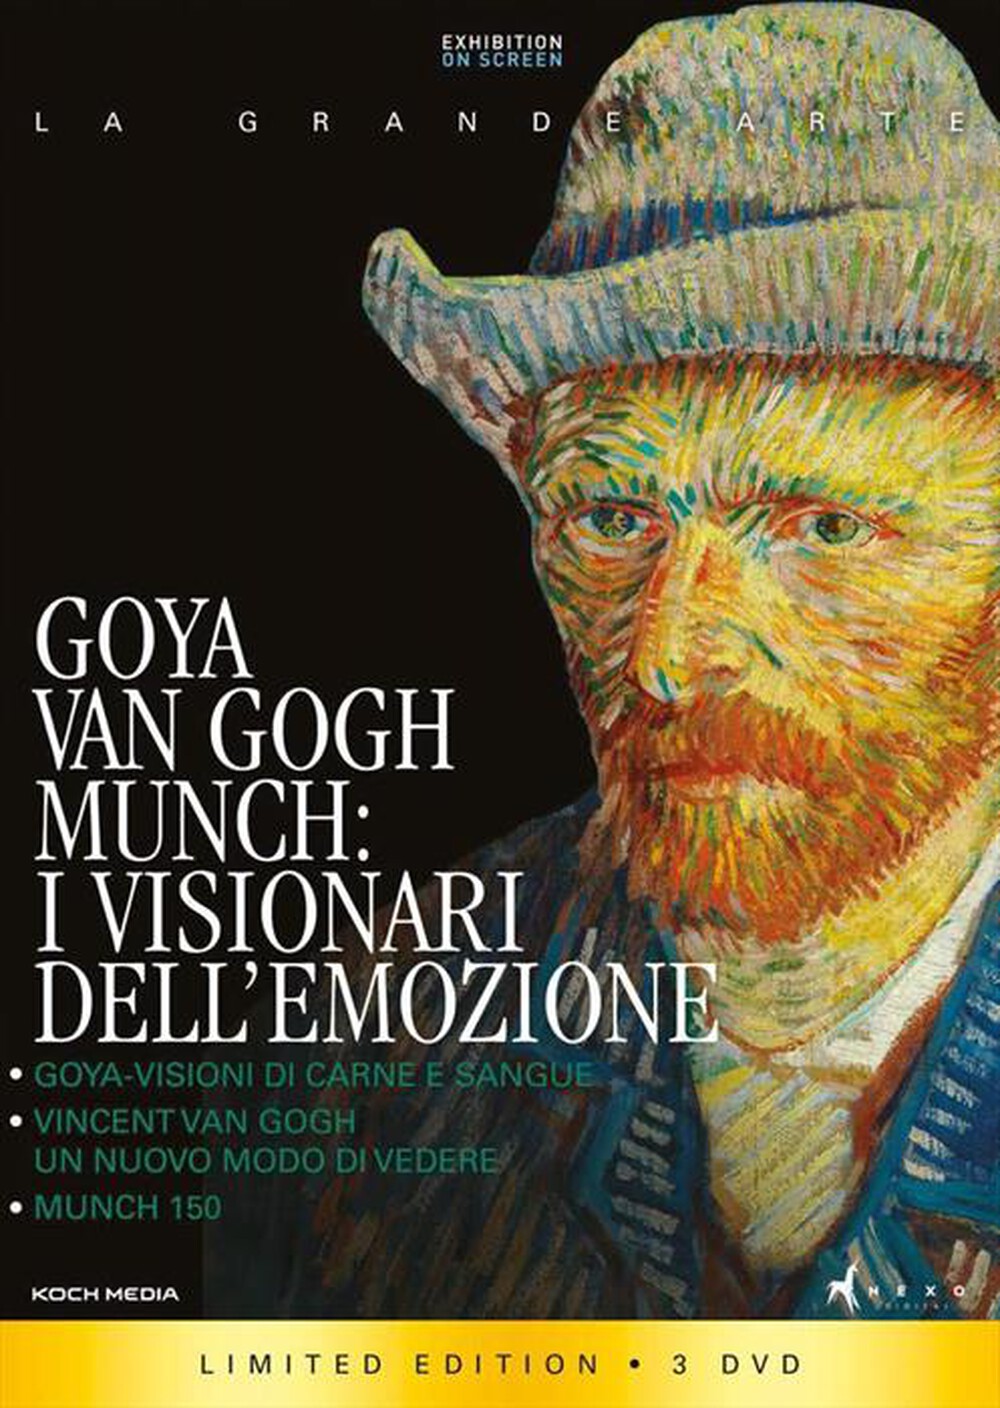 "KOCH MEDIA - Goya, Van Gogh, Munch I Visionari Dell'Emozione"